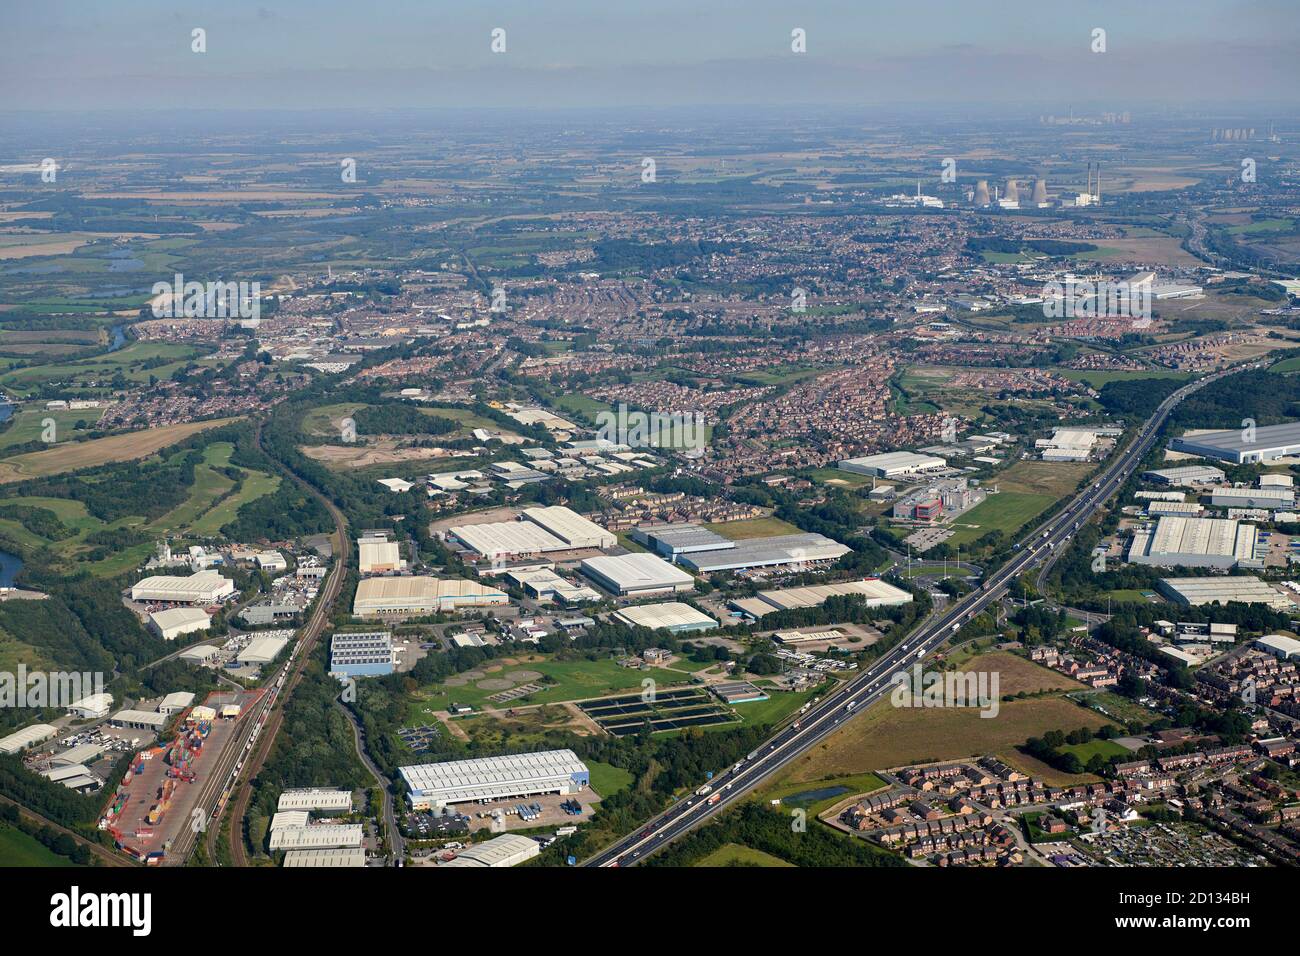 Eine Luftaufnahme des Industrieguts Normanton, das die Autobahn M62 überspannt, West Yorkshire, Nordengland, Großbritannien Stockfoto